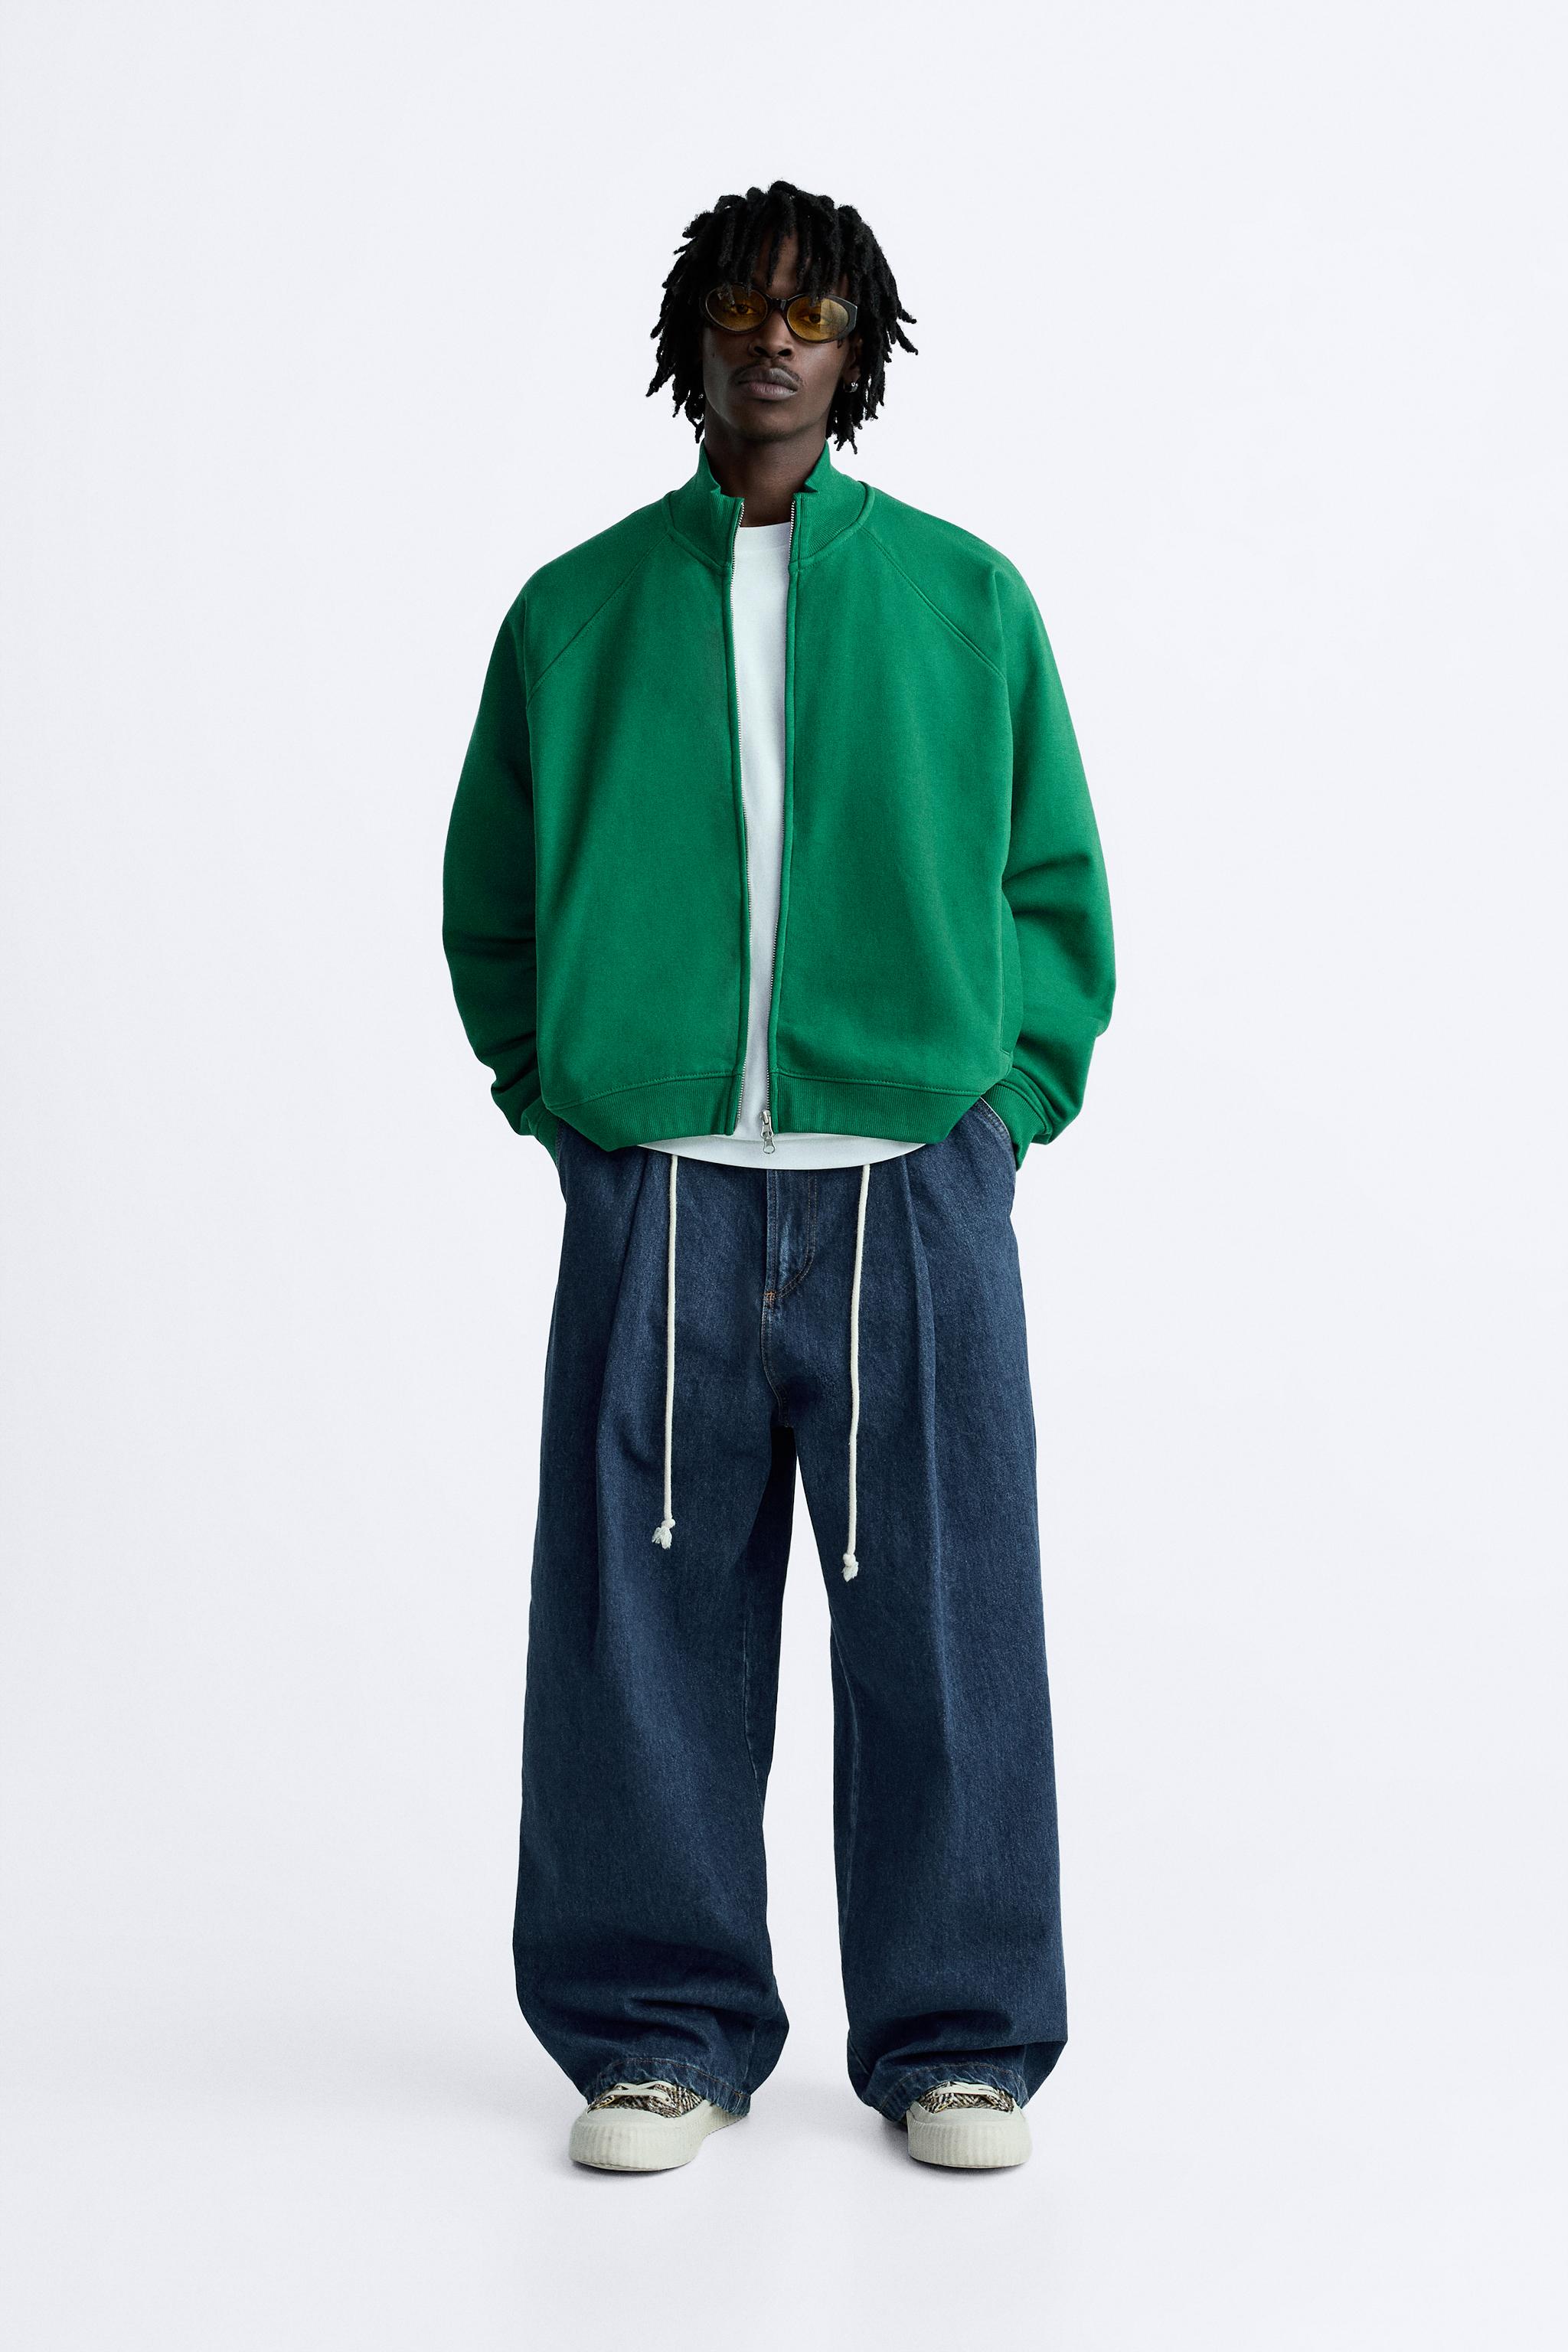 グリーンスウェットシャツ – メンズ | 最新コレクション | ZARA 日本